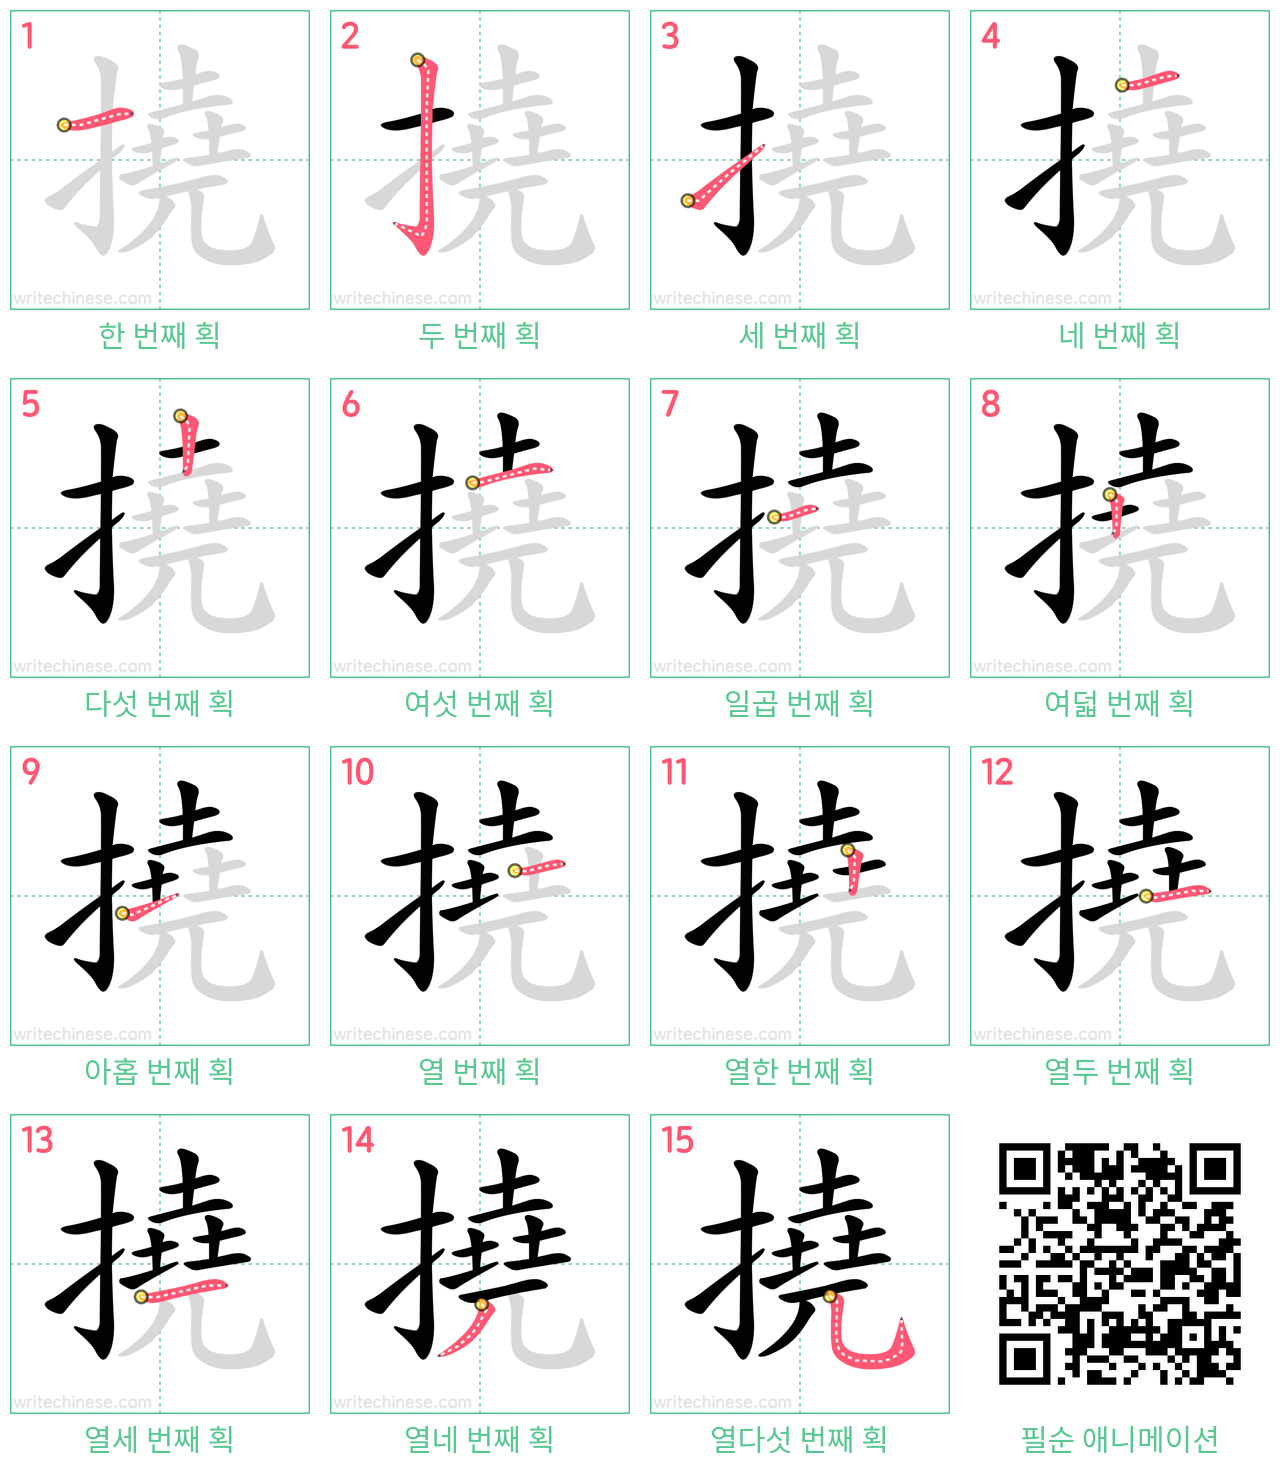 撓 step-by-step stroke order diagrams